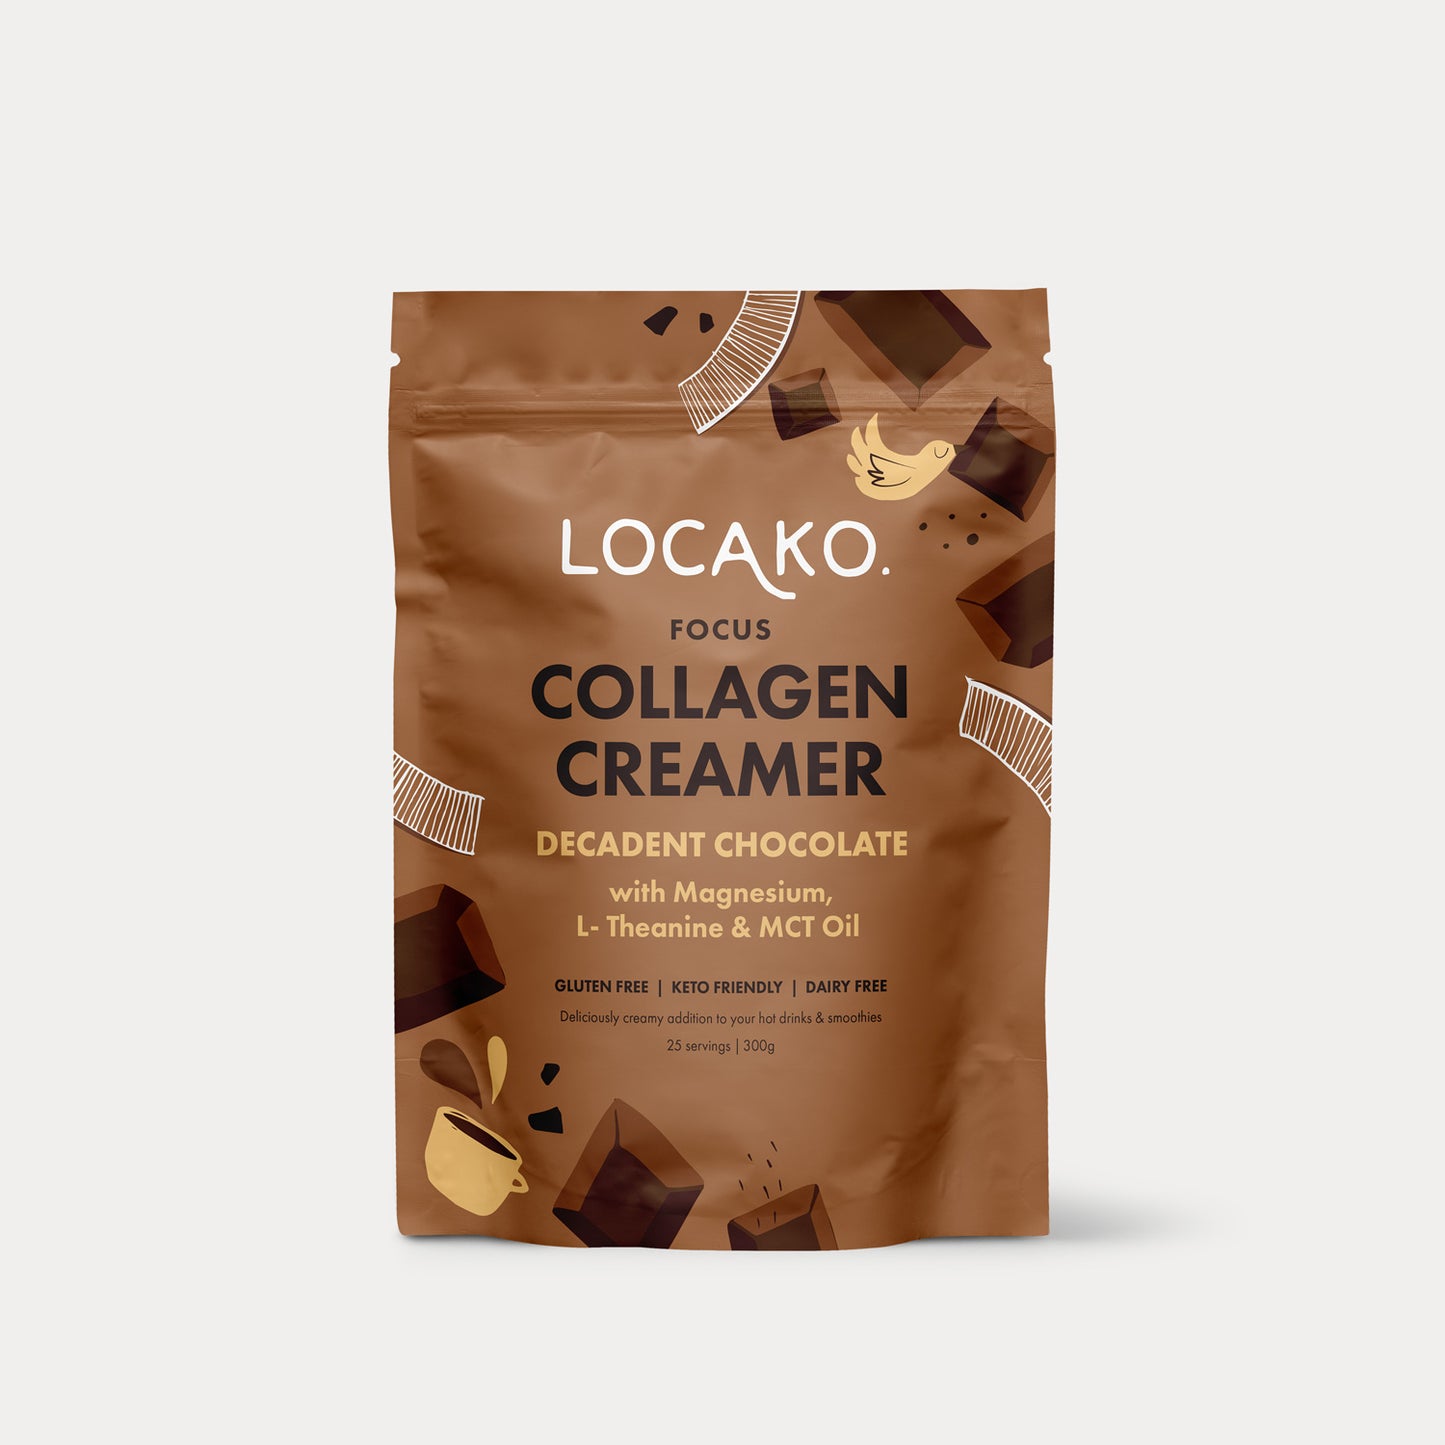 Collagen Creamer - Focus - Decadent Chocolate - Locako